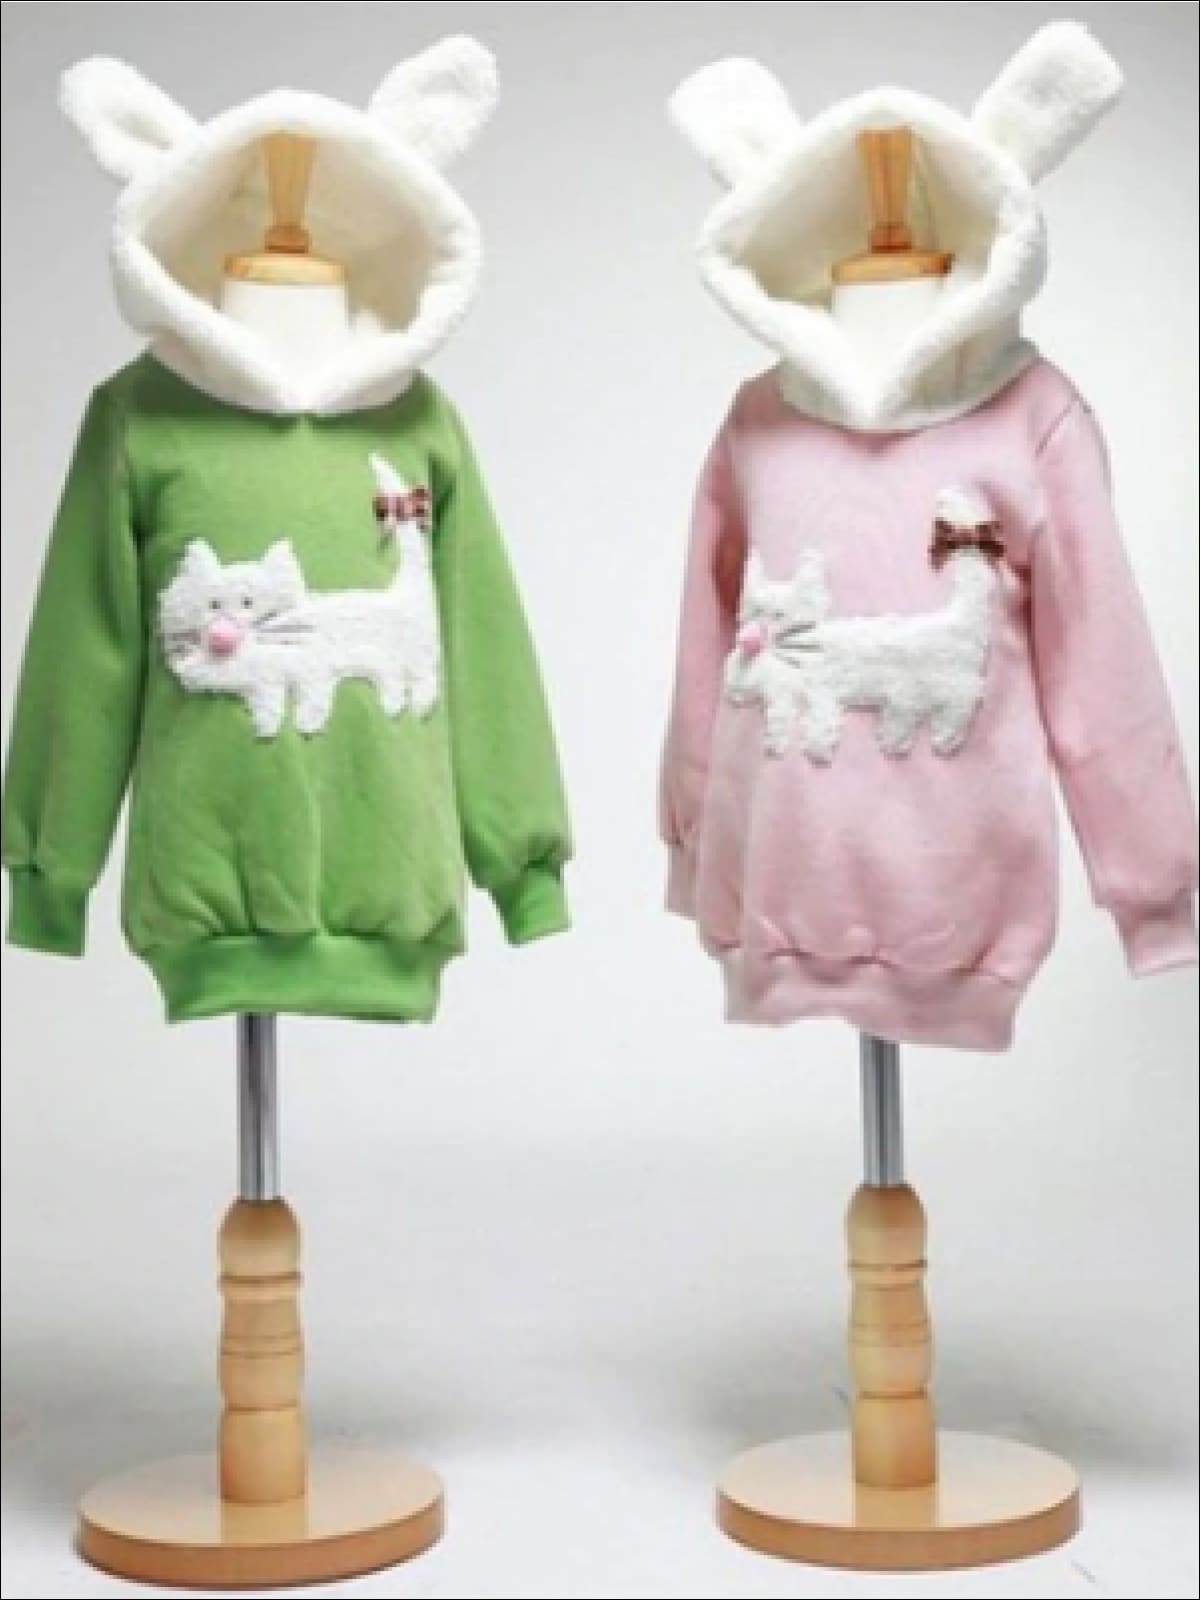 Sweaters & Cardigans | Fleece Cat Applique Hoodie | Mia Belle Girls